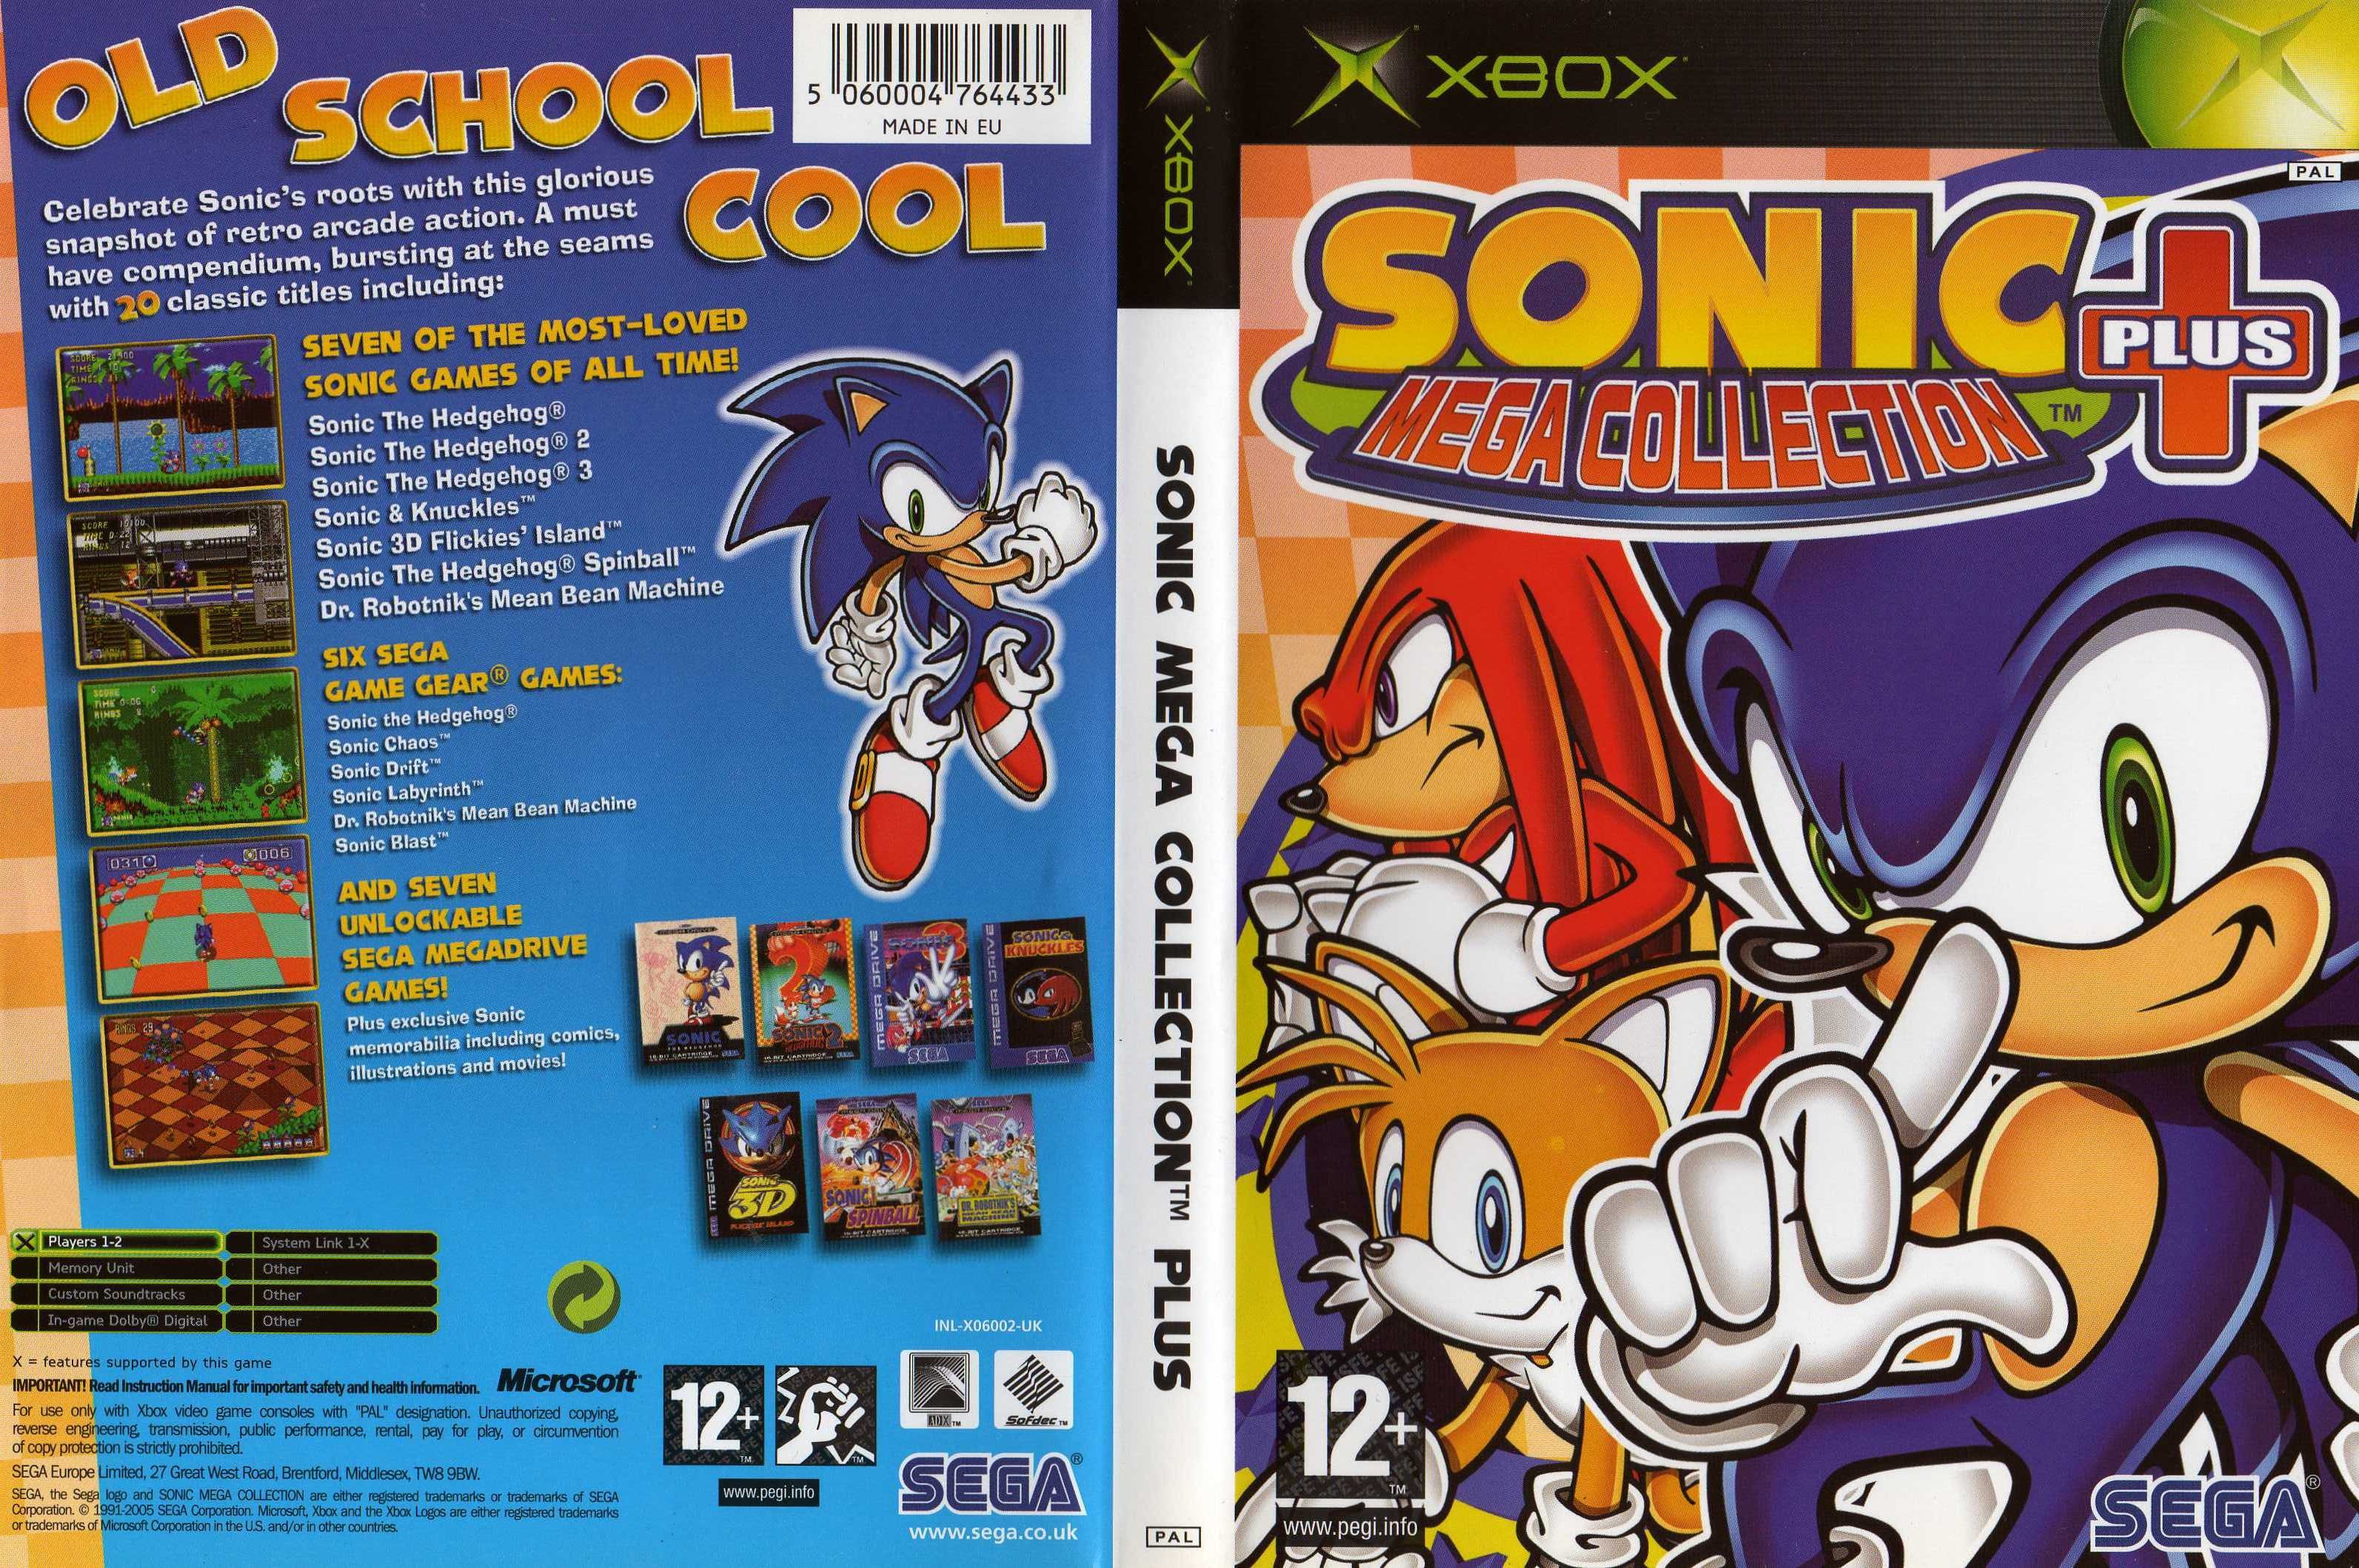 Sonic gamecube rom. Sonic Mega collection Plus Xbox. Sonic Mega collection Plus Xbox 360. Sonic Mega collection GAMECUBE. Sonic Mega collection Plus Xbox Original.